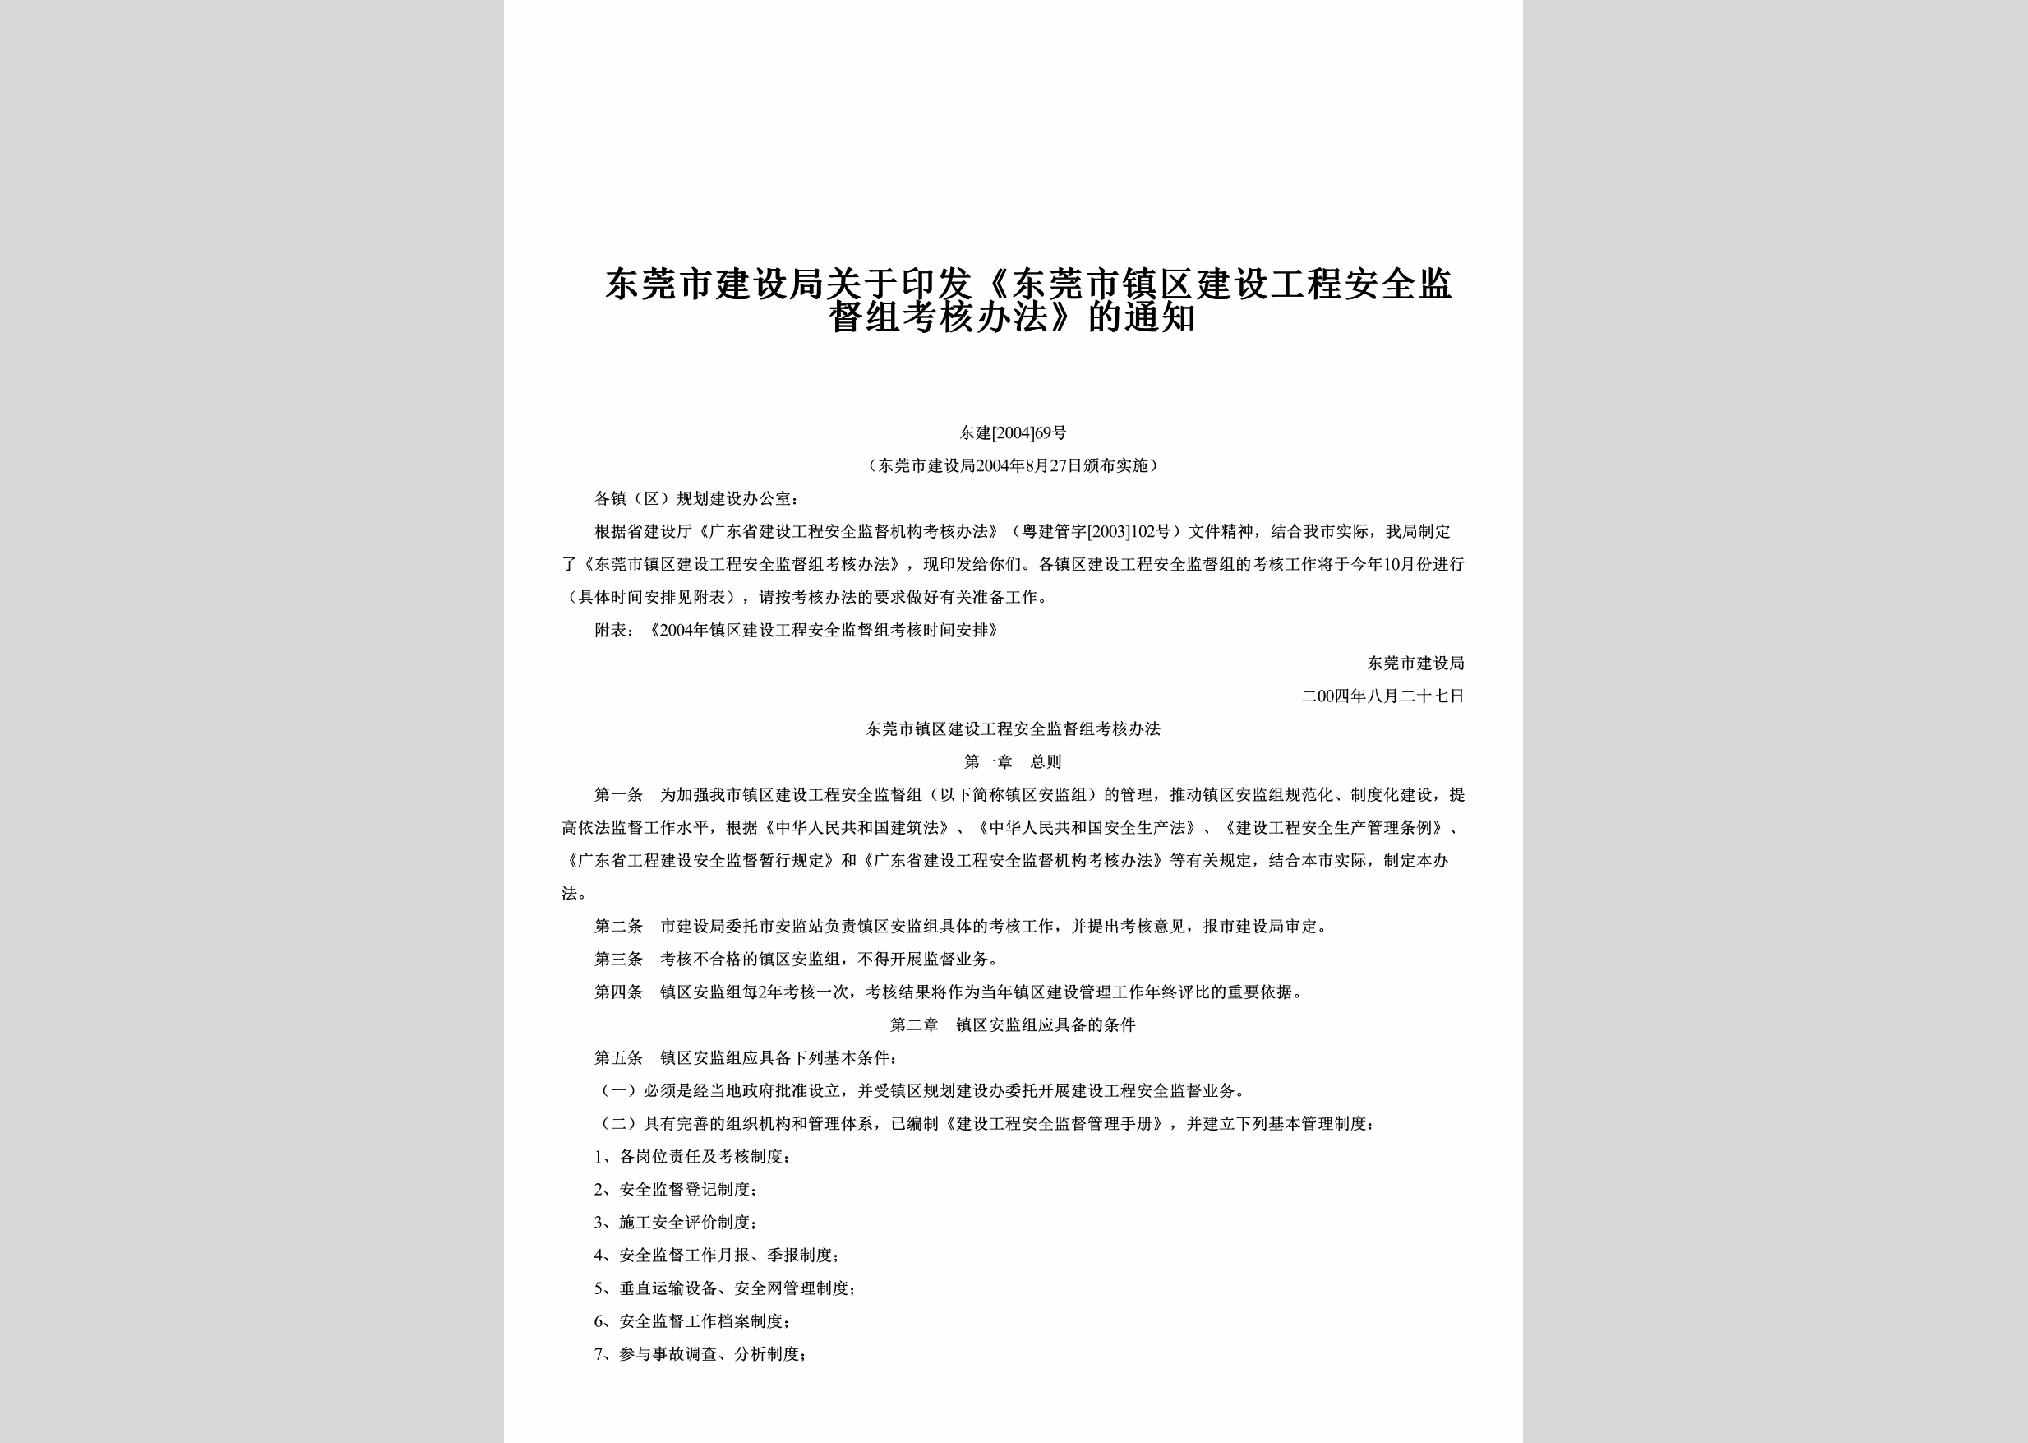 东建[2004]69号：关于印发《东莞市镇区建设工程安全监督组考核办法》的通知